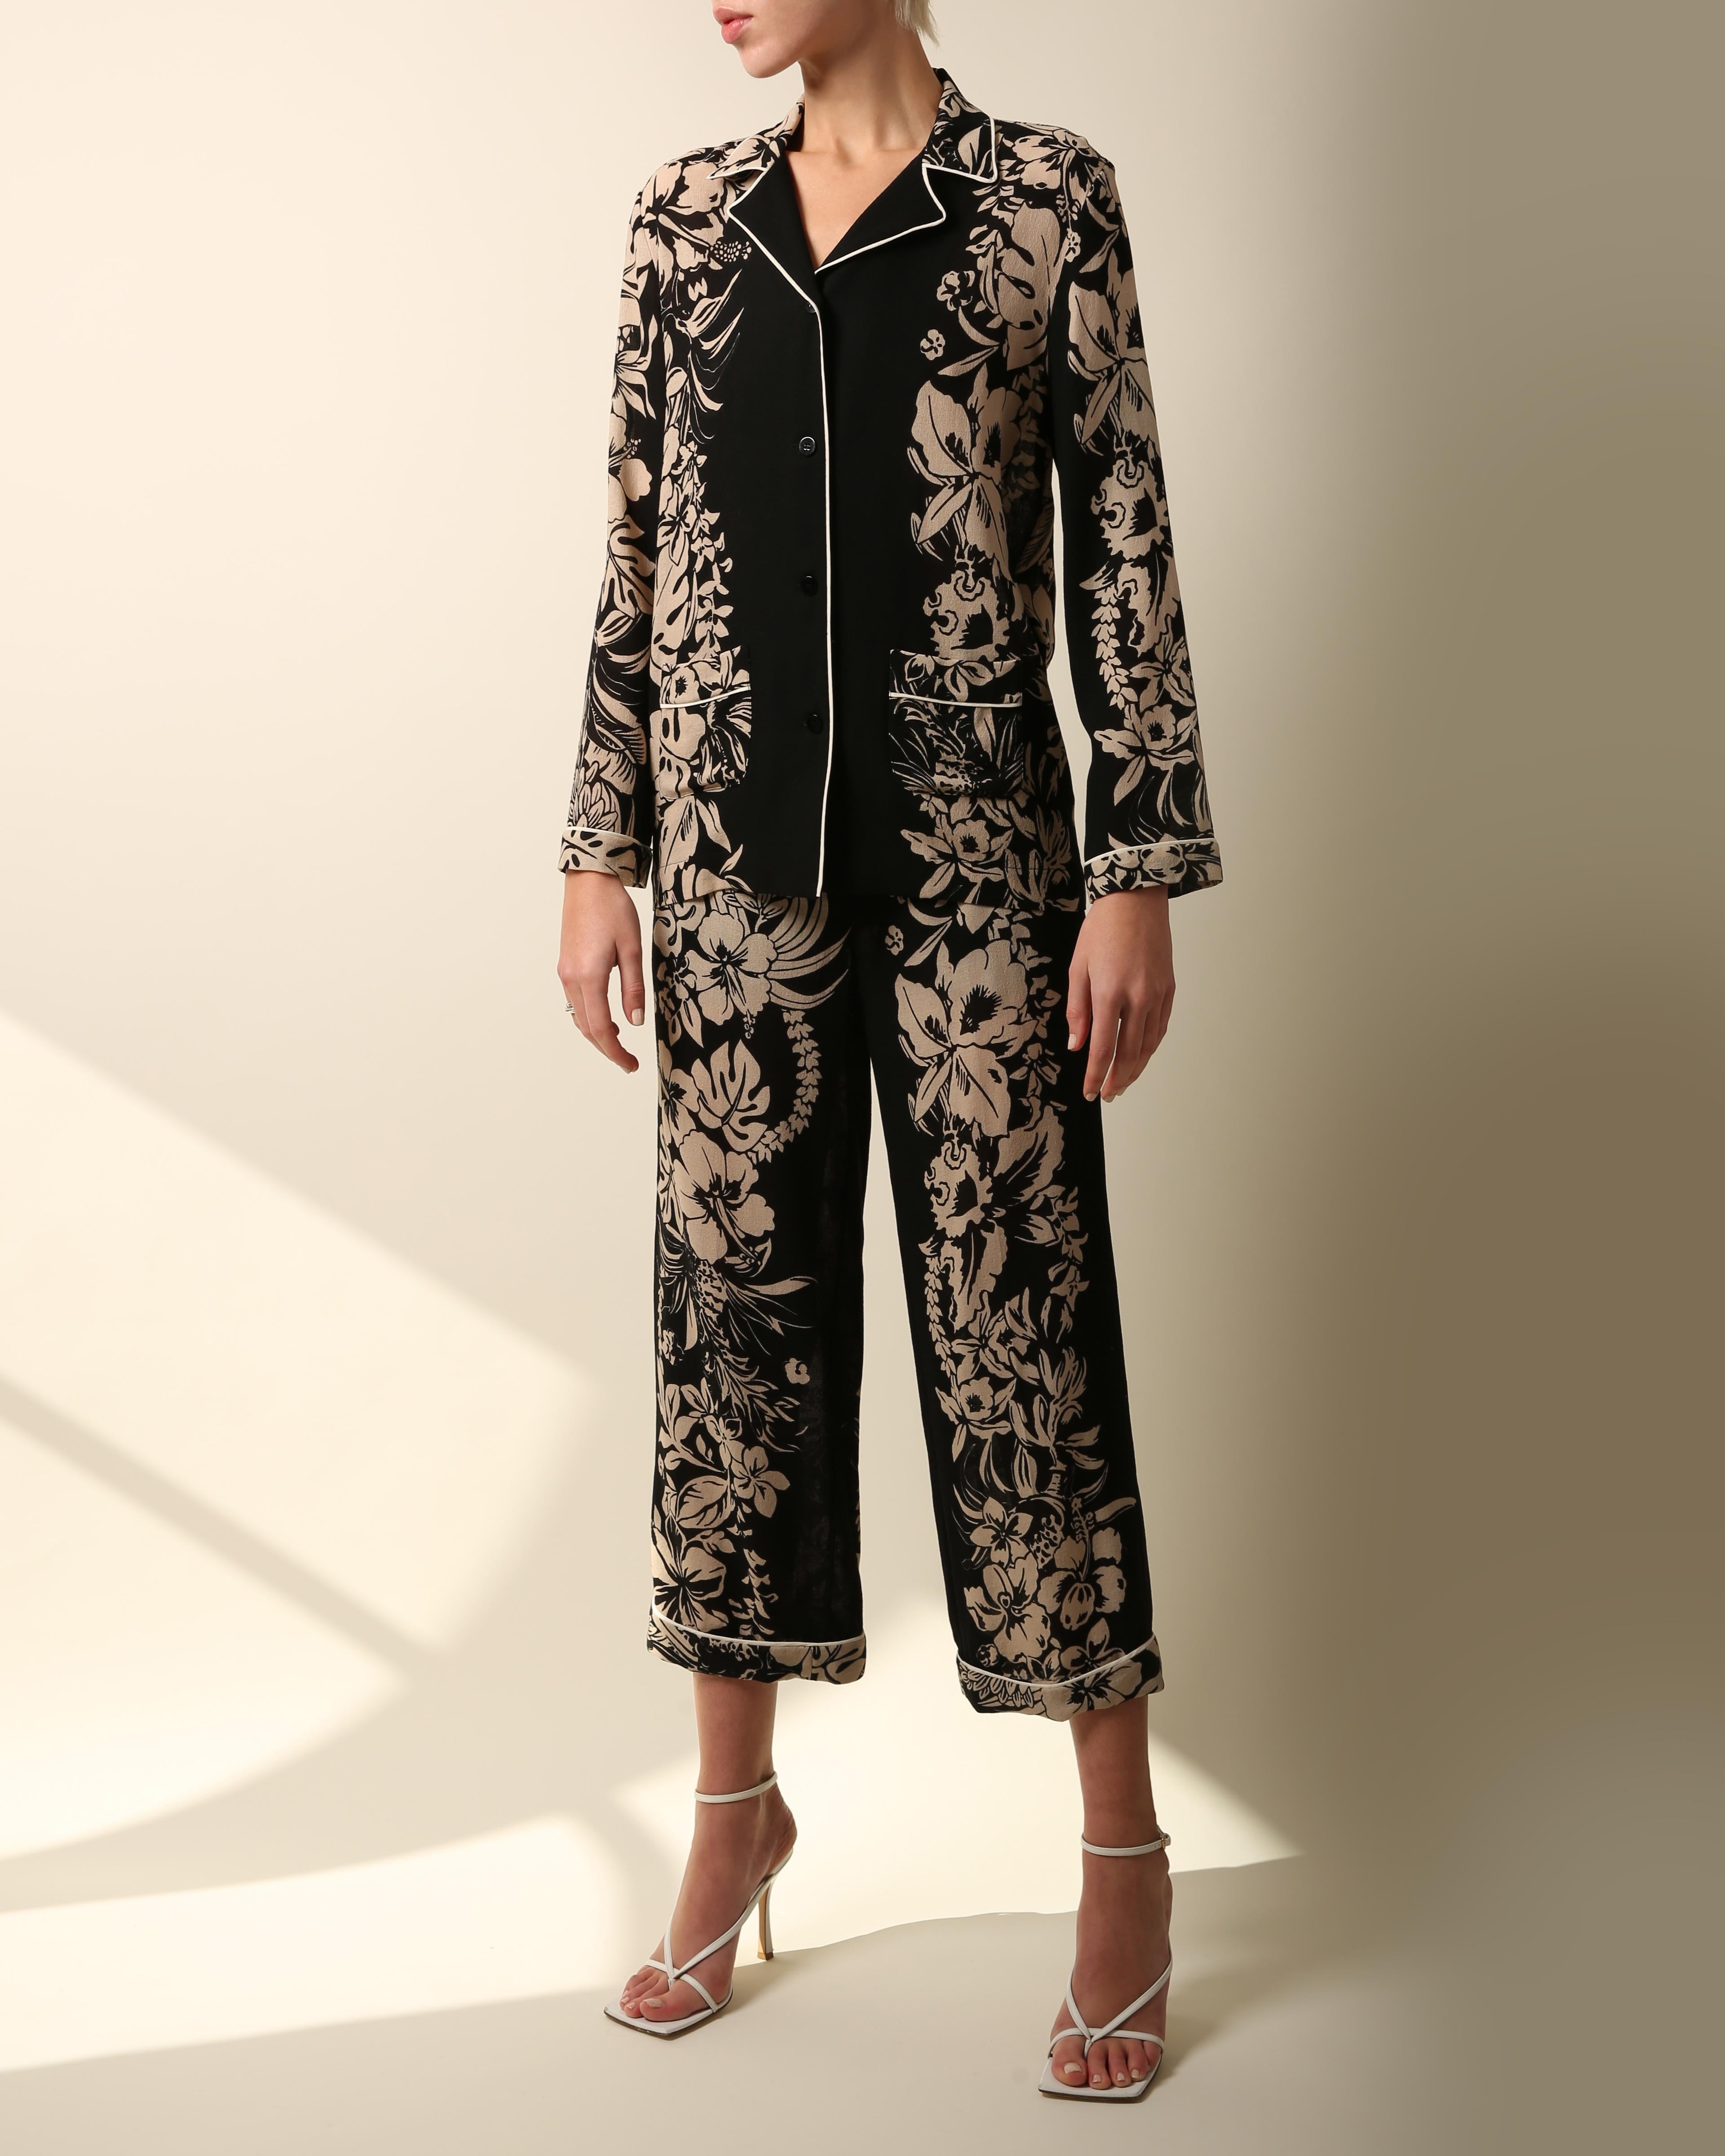 Ein wunderschönes zweiteiliges Set von Valentino, bestehend aus einer geknöpften Bluse und einer Hose mit weitem, umgeschlagenem Bein
Locker sitzender Pyjama-Stil 
Schwarzer und nackter Blumendruck mit weißer Paspel
Zwei Taschen an der Bluse, die